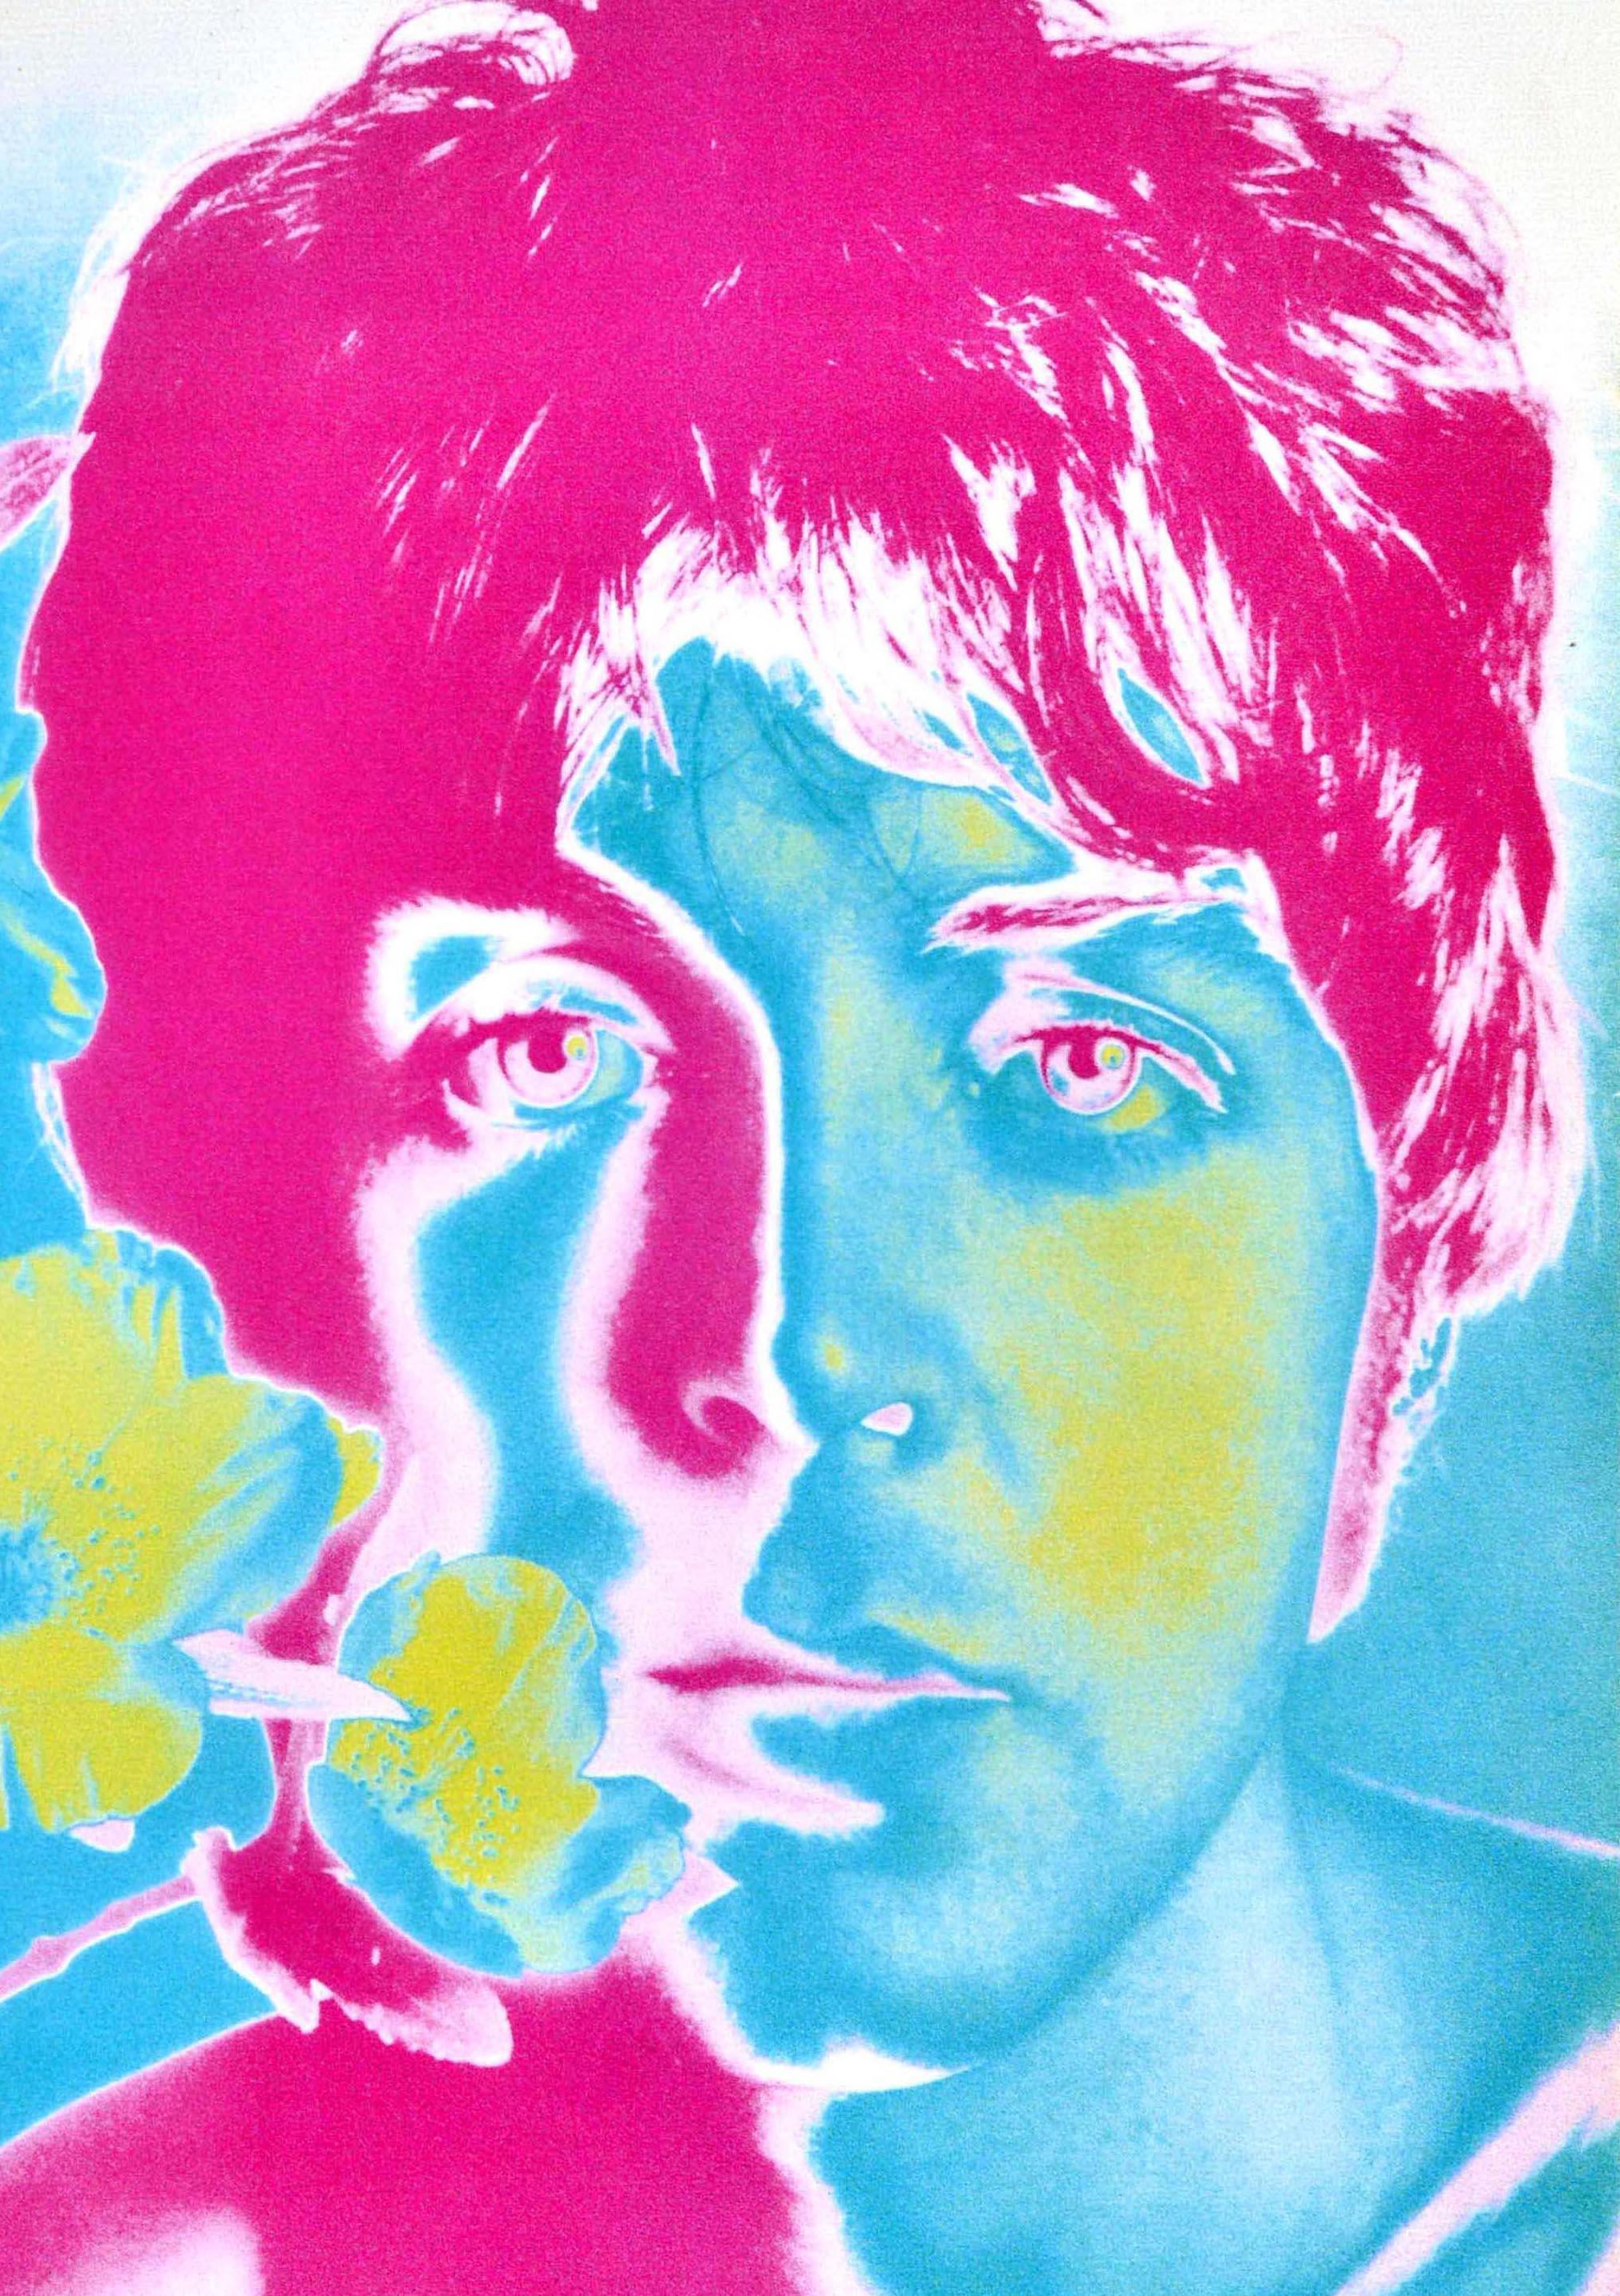 Affiche publicitaire vintage originale des Beatles, Paul McCartney Flower Avedon - Print de Richard Avedon